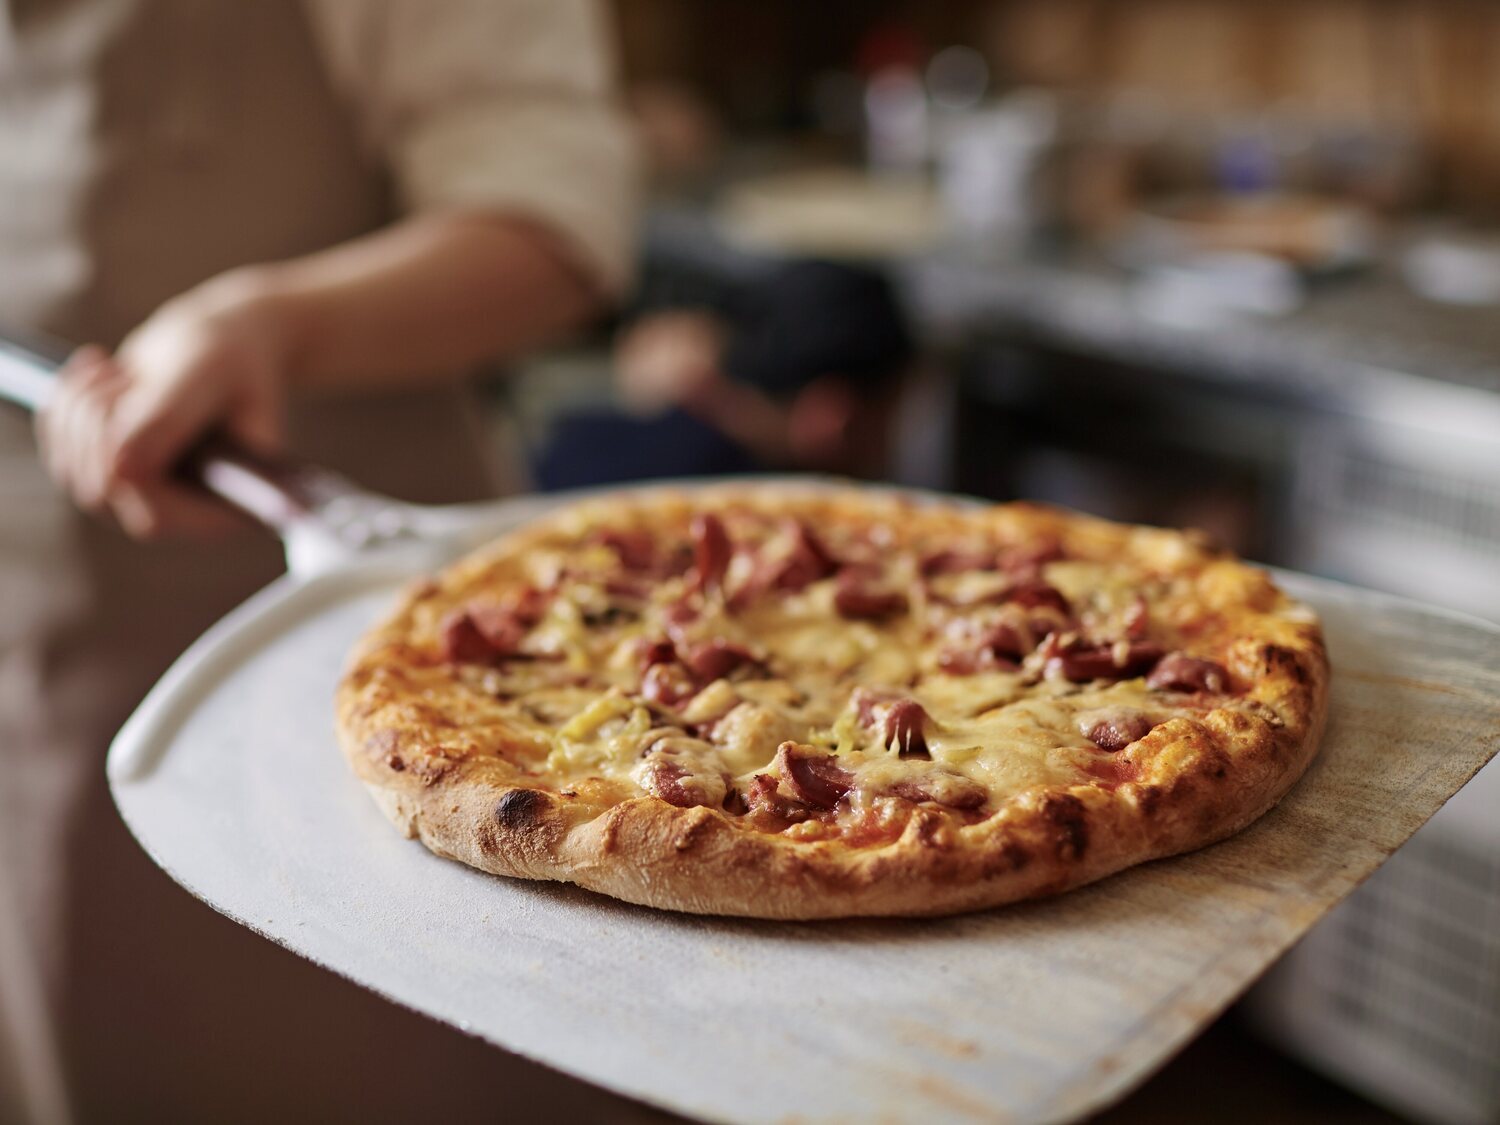 Alerta alimentaria: declaran brotes de salmonelosis en pollo distribuido en comida rápida como pizzas o kebabs